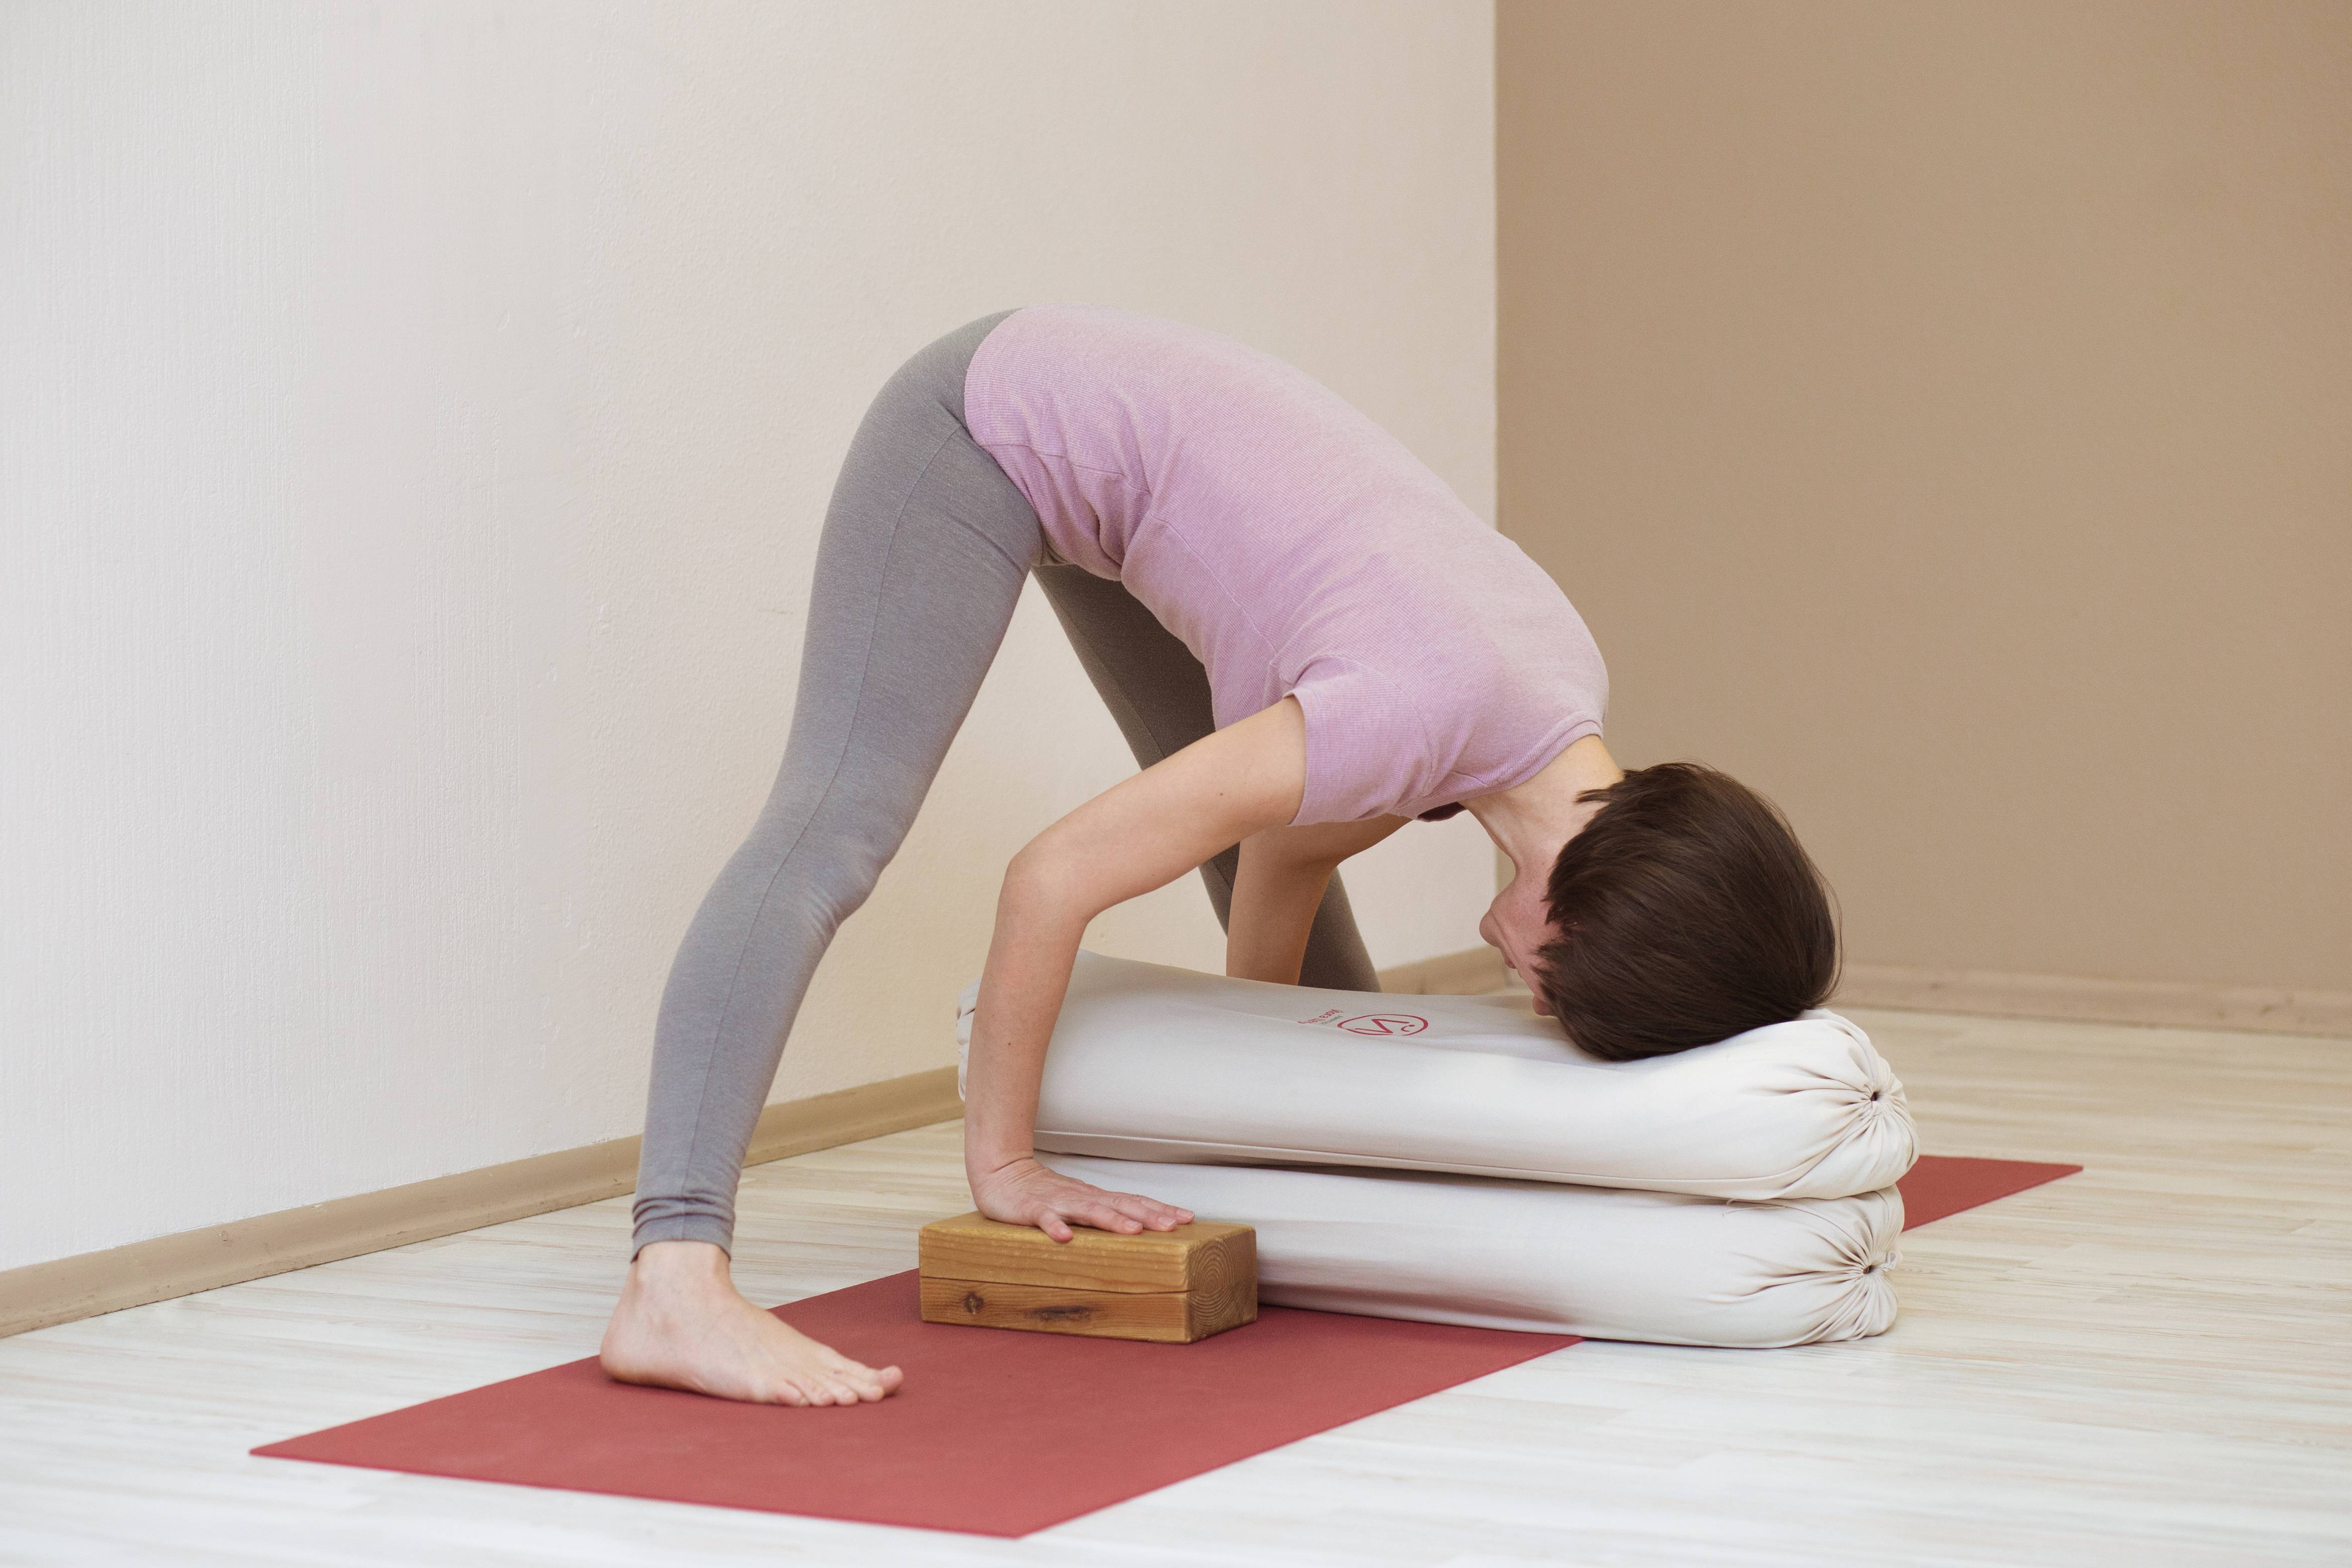 Двипада випарита дандасана — поза перевернутого посоха в практике асан йоги